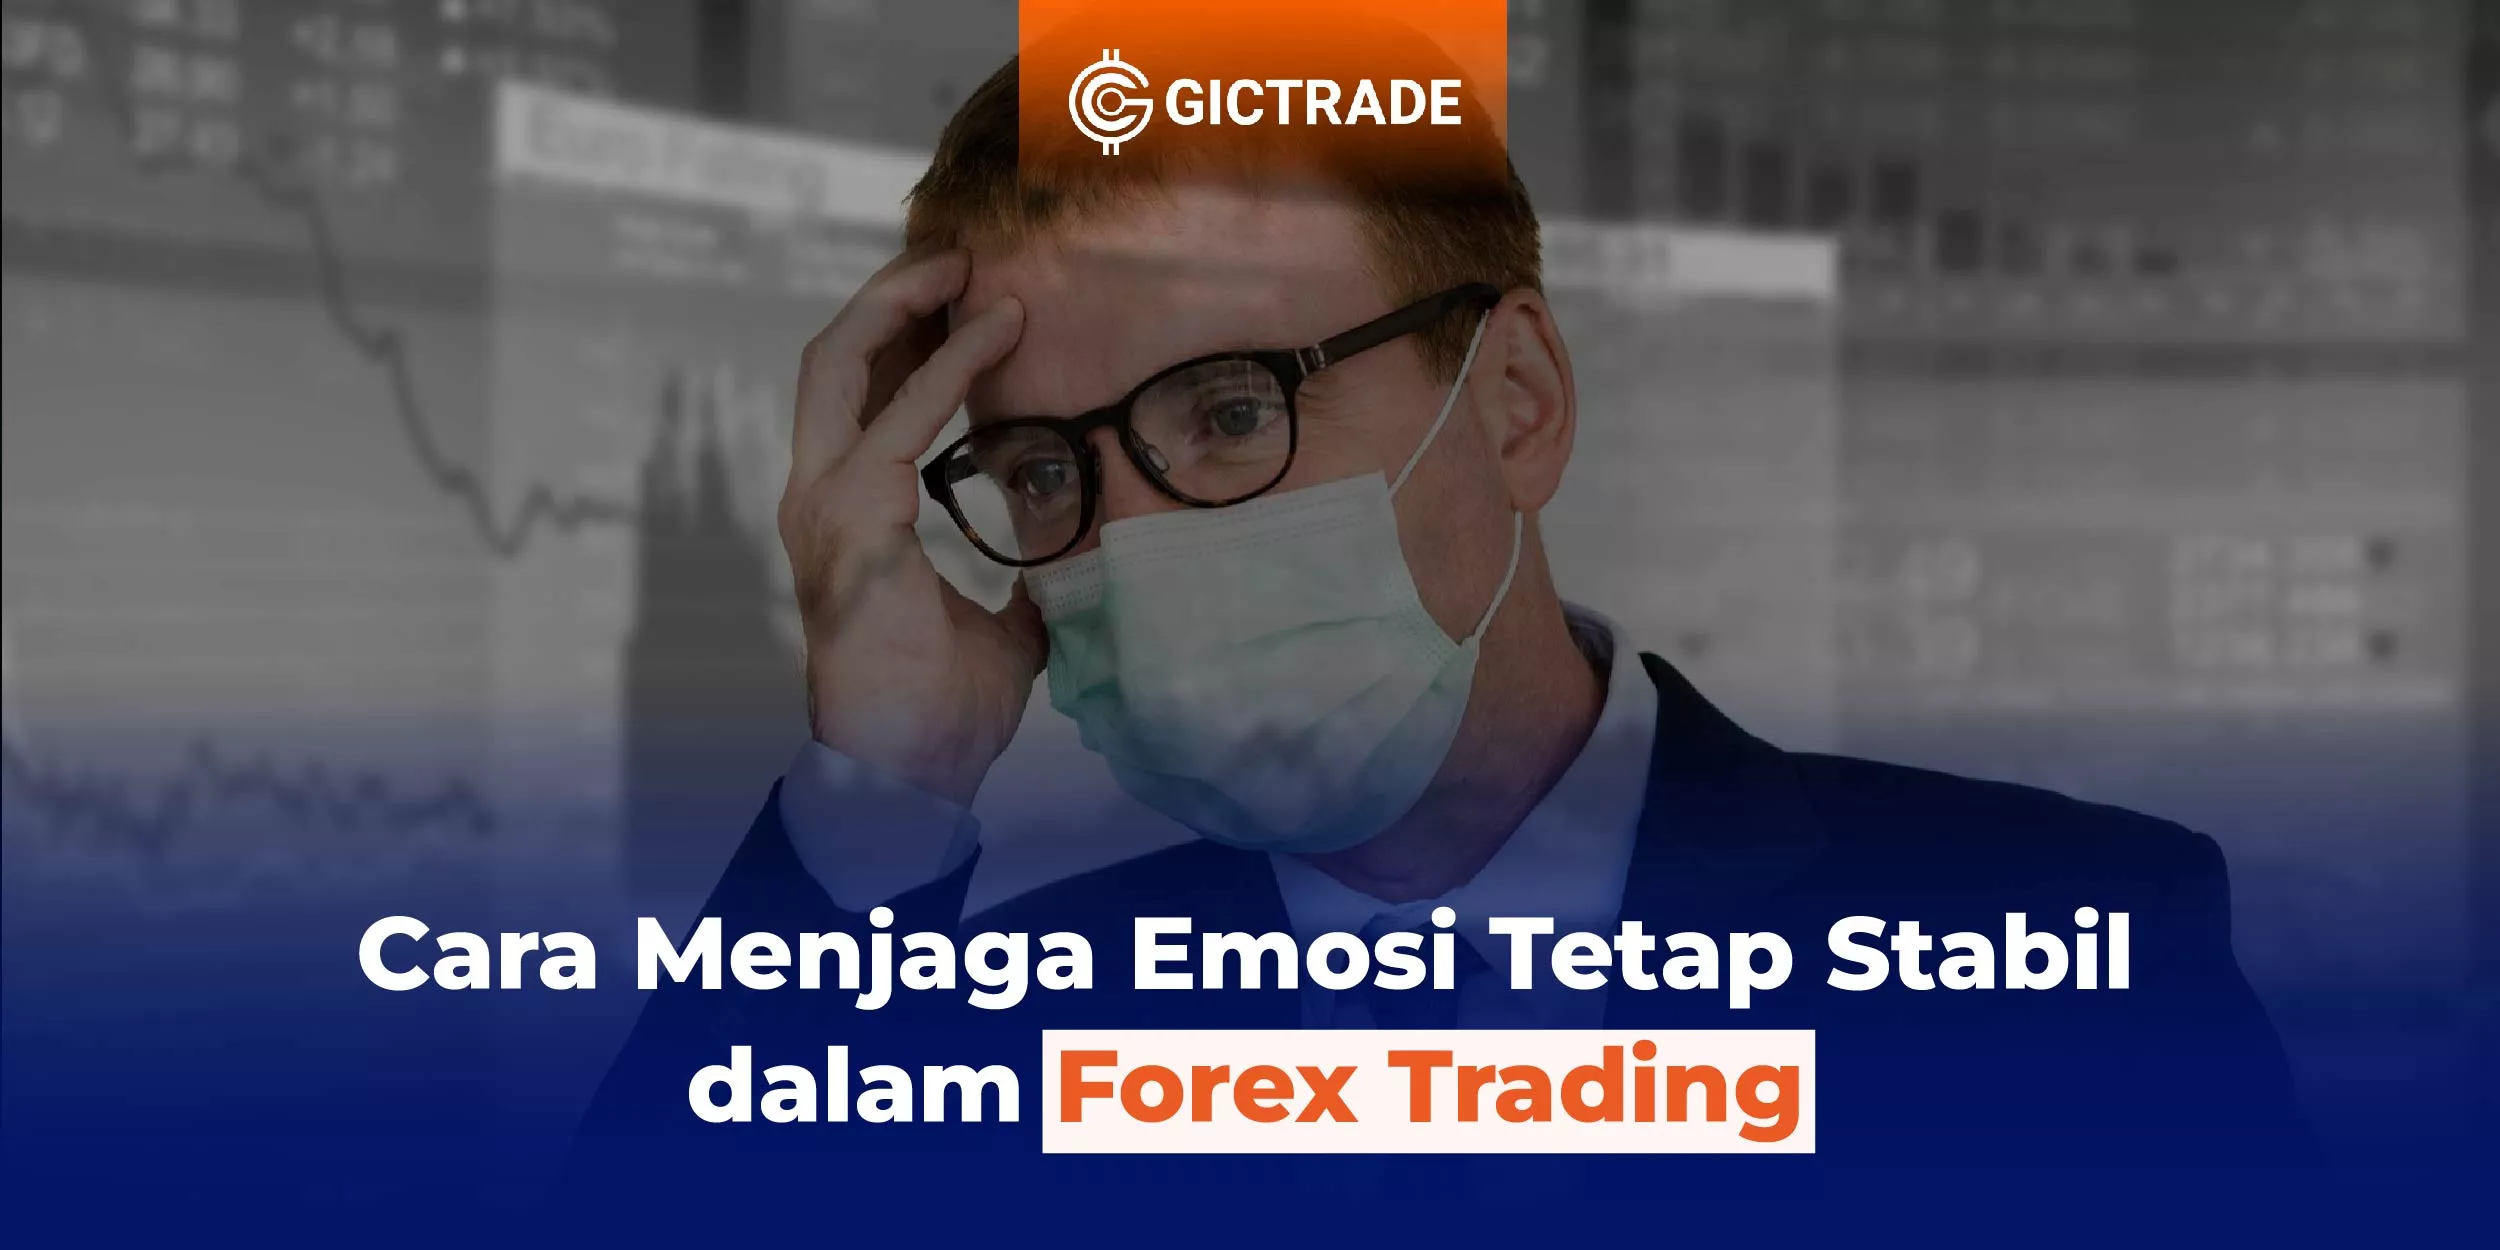 Cara Menjaga Emosi dalam Forex Trading